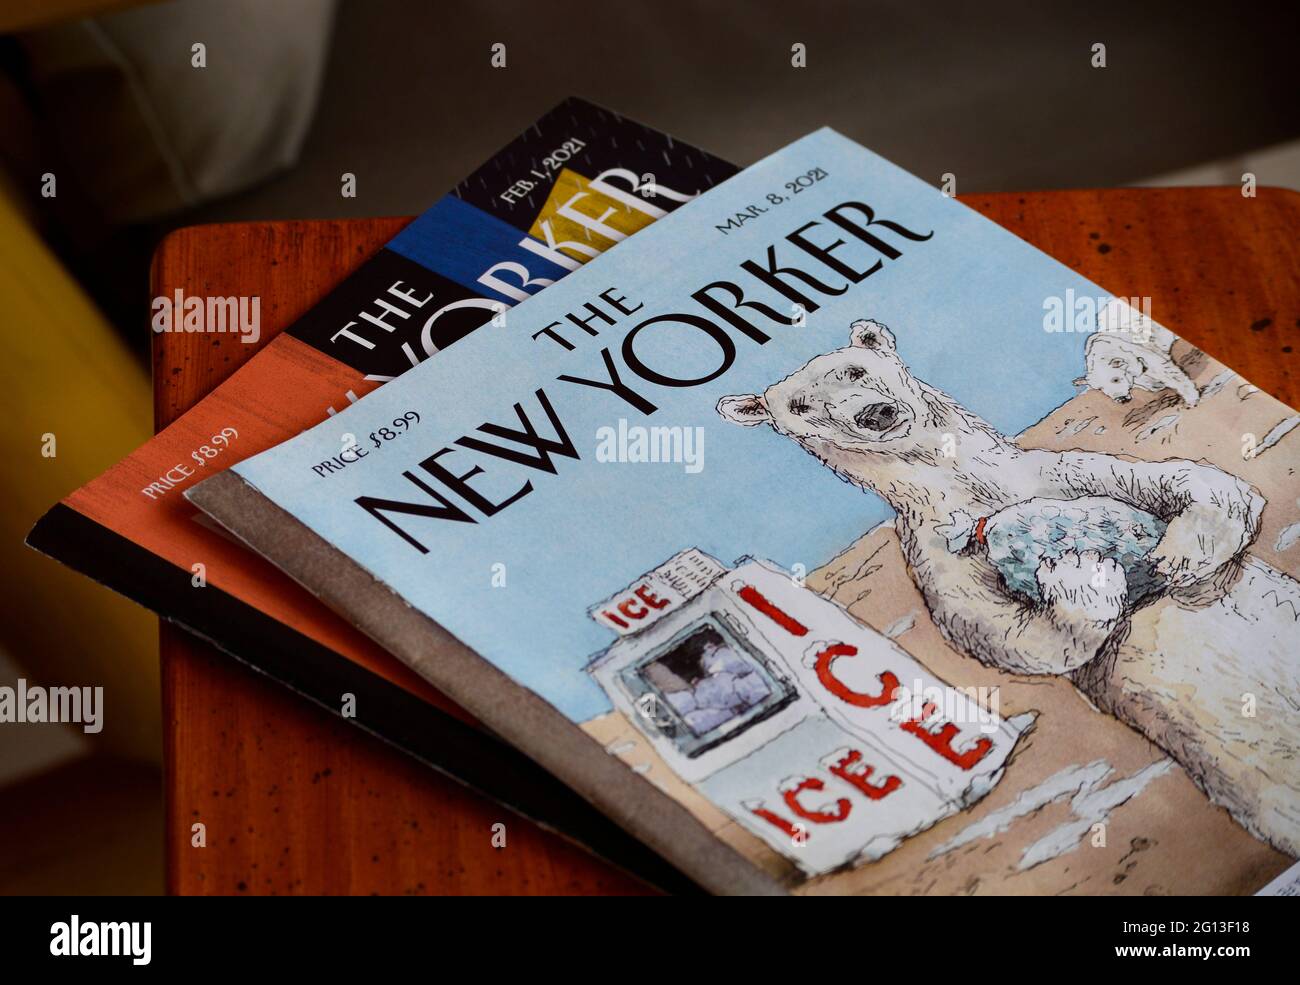 Kopien des Wochenmagazins The New Yorker, herausgegeben von Conde Nast. Stockfoto